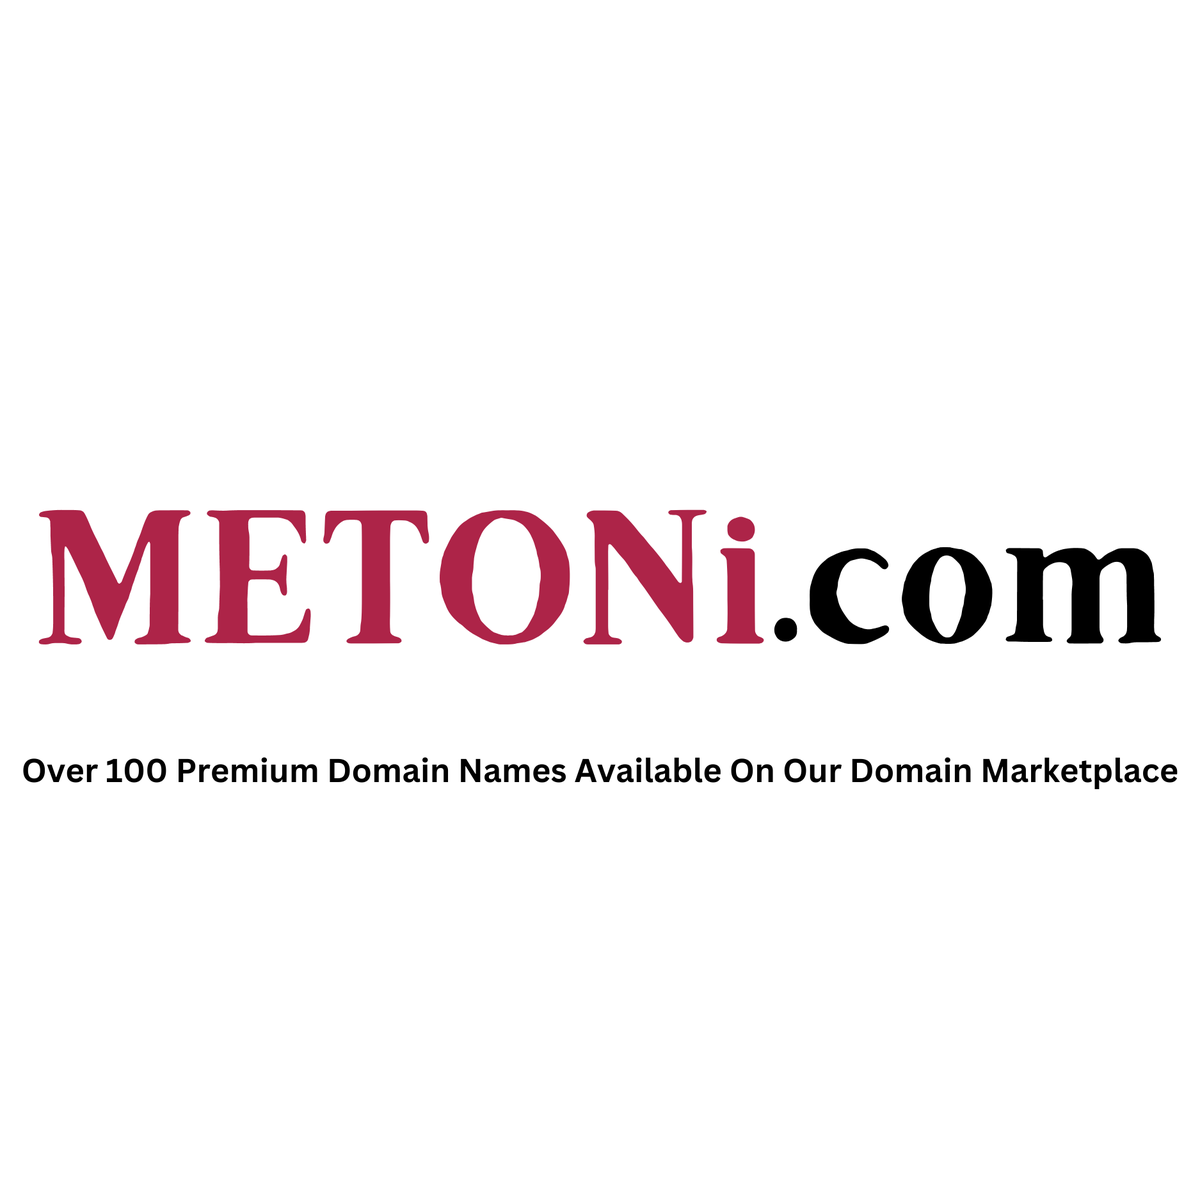 The domain name Diesels.io is now for sale By Metoni.com 

#DomainBazaar #DieselCars #DomainInvestment #DieselTorque #DieselFuel #DomainAuctions #DieselTech #DieselMaintenance #DomainOpportunity #DieselTractors #DieselEngine #DomainOffers